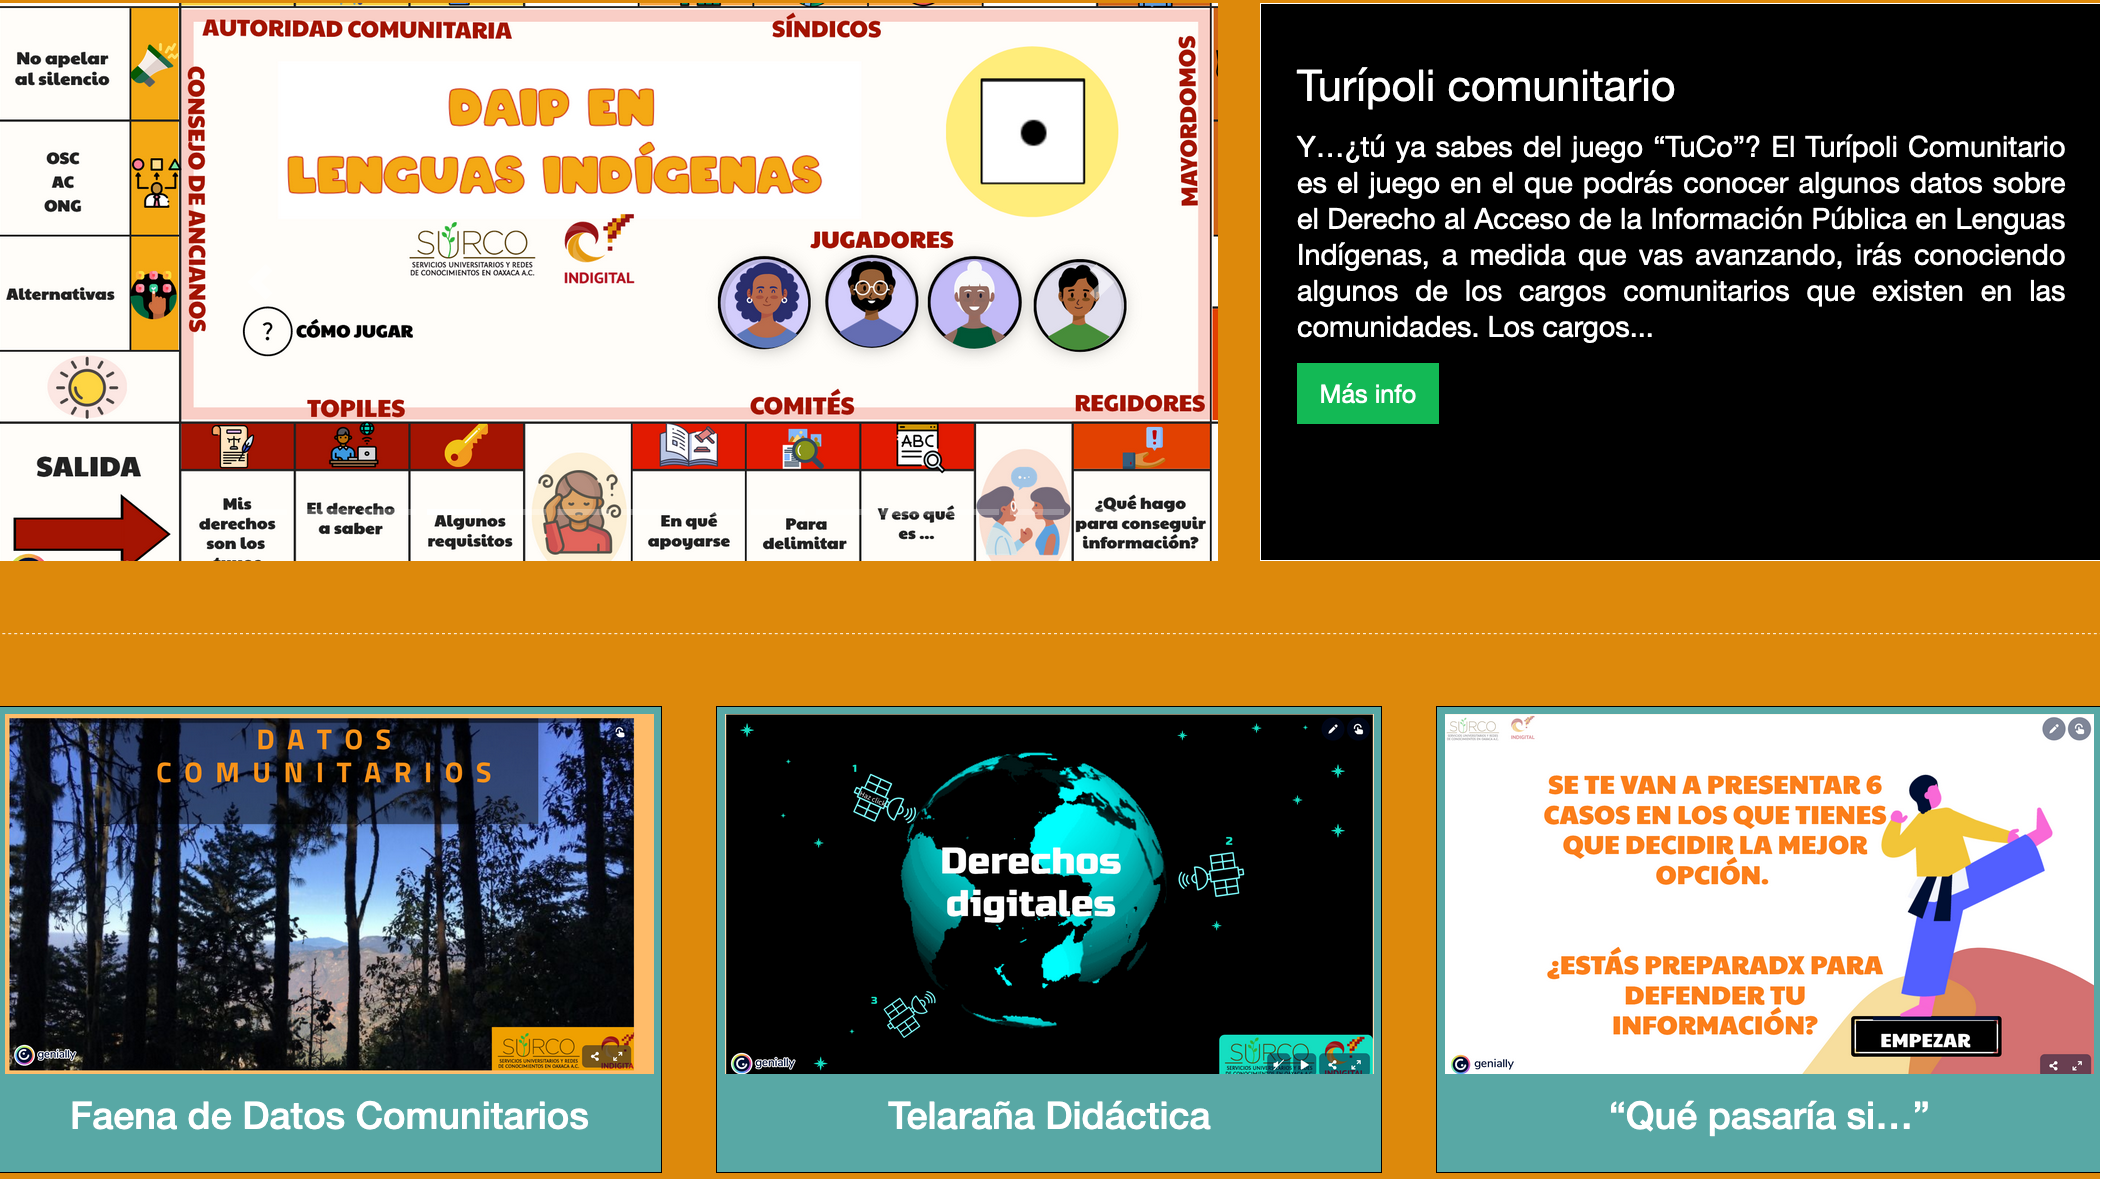 Indigital reinventa la educación popular a través de experiencias interactivas y divertidas para promover la apropiación de los derechos digitales en lenguas indígenas de Oaxaca